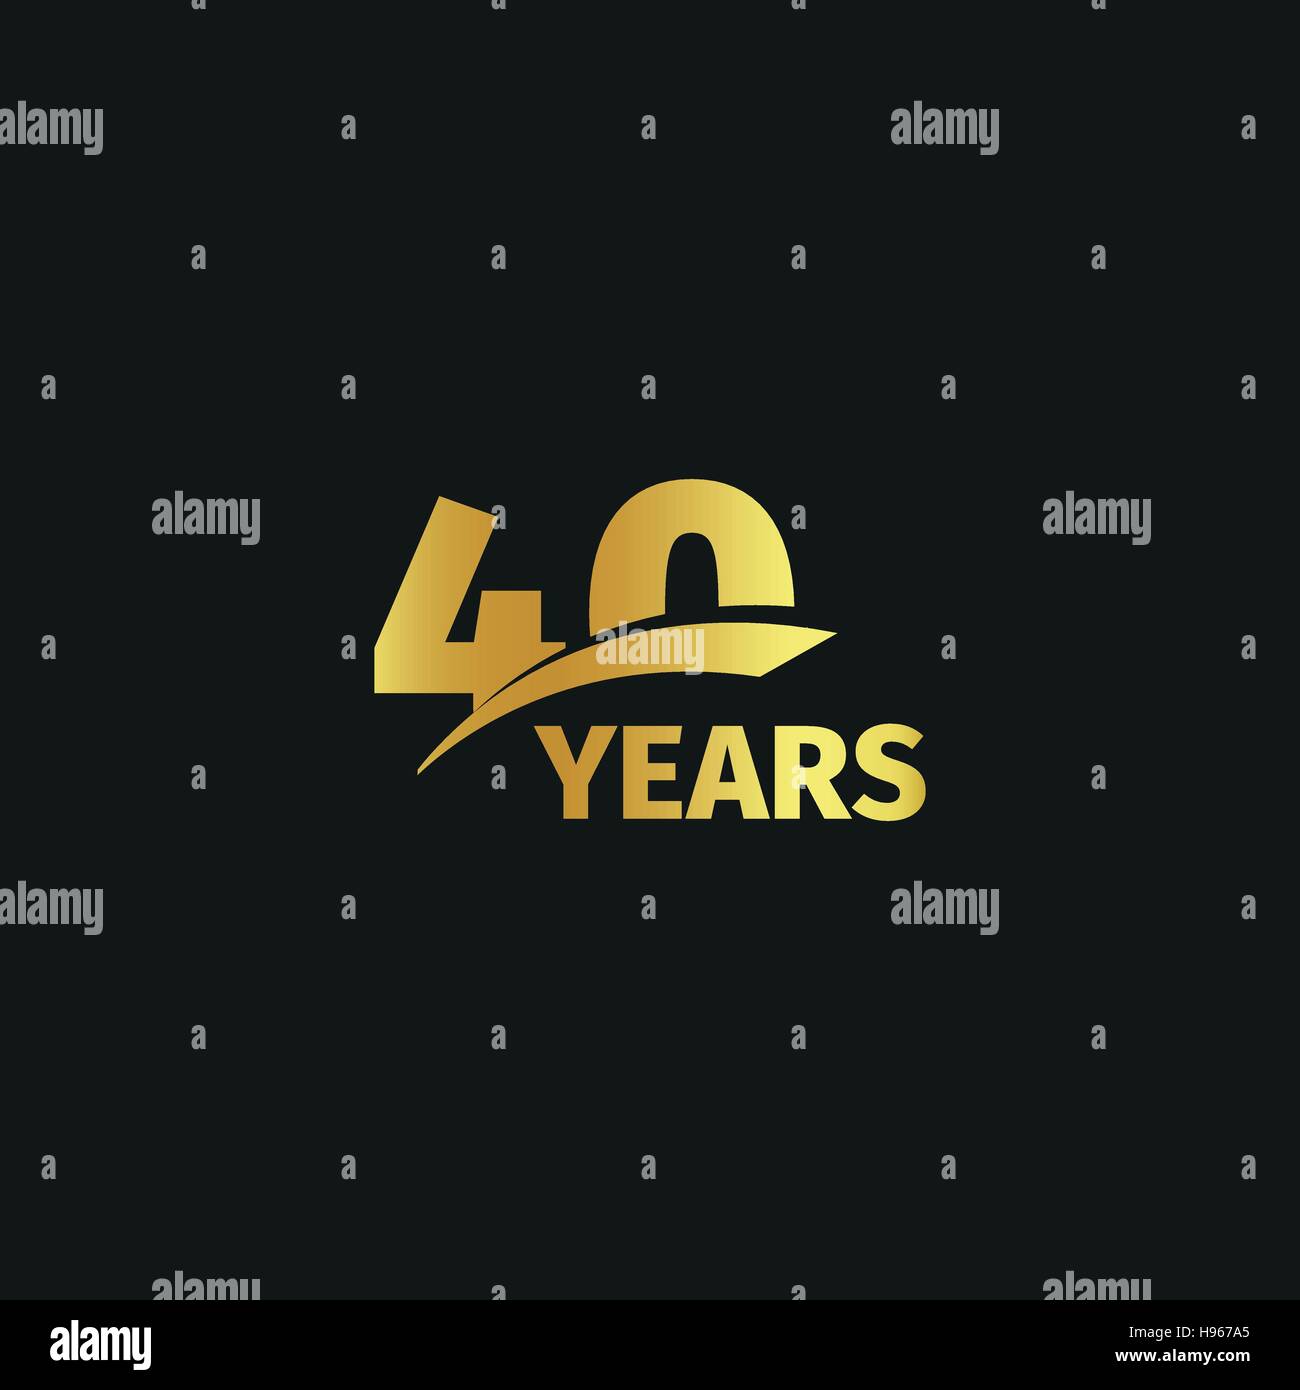 Abstract golden 40th Jahrestag Logo auf schwarzem Hintergrund isoliert. die Nummer 40 Schriftzug. Vierzig Jahre Jubiläum Feier Symbol. 40. Geburtstag-Emblem. Vektor-Illustration. Stock Vektor